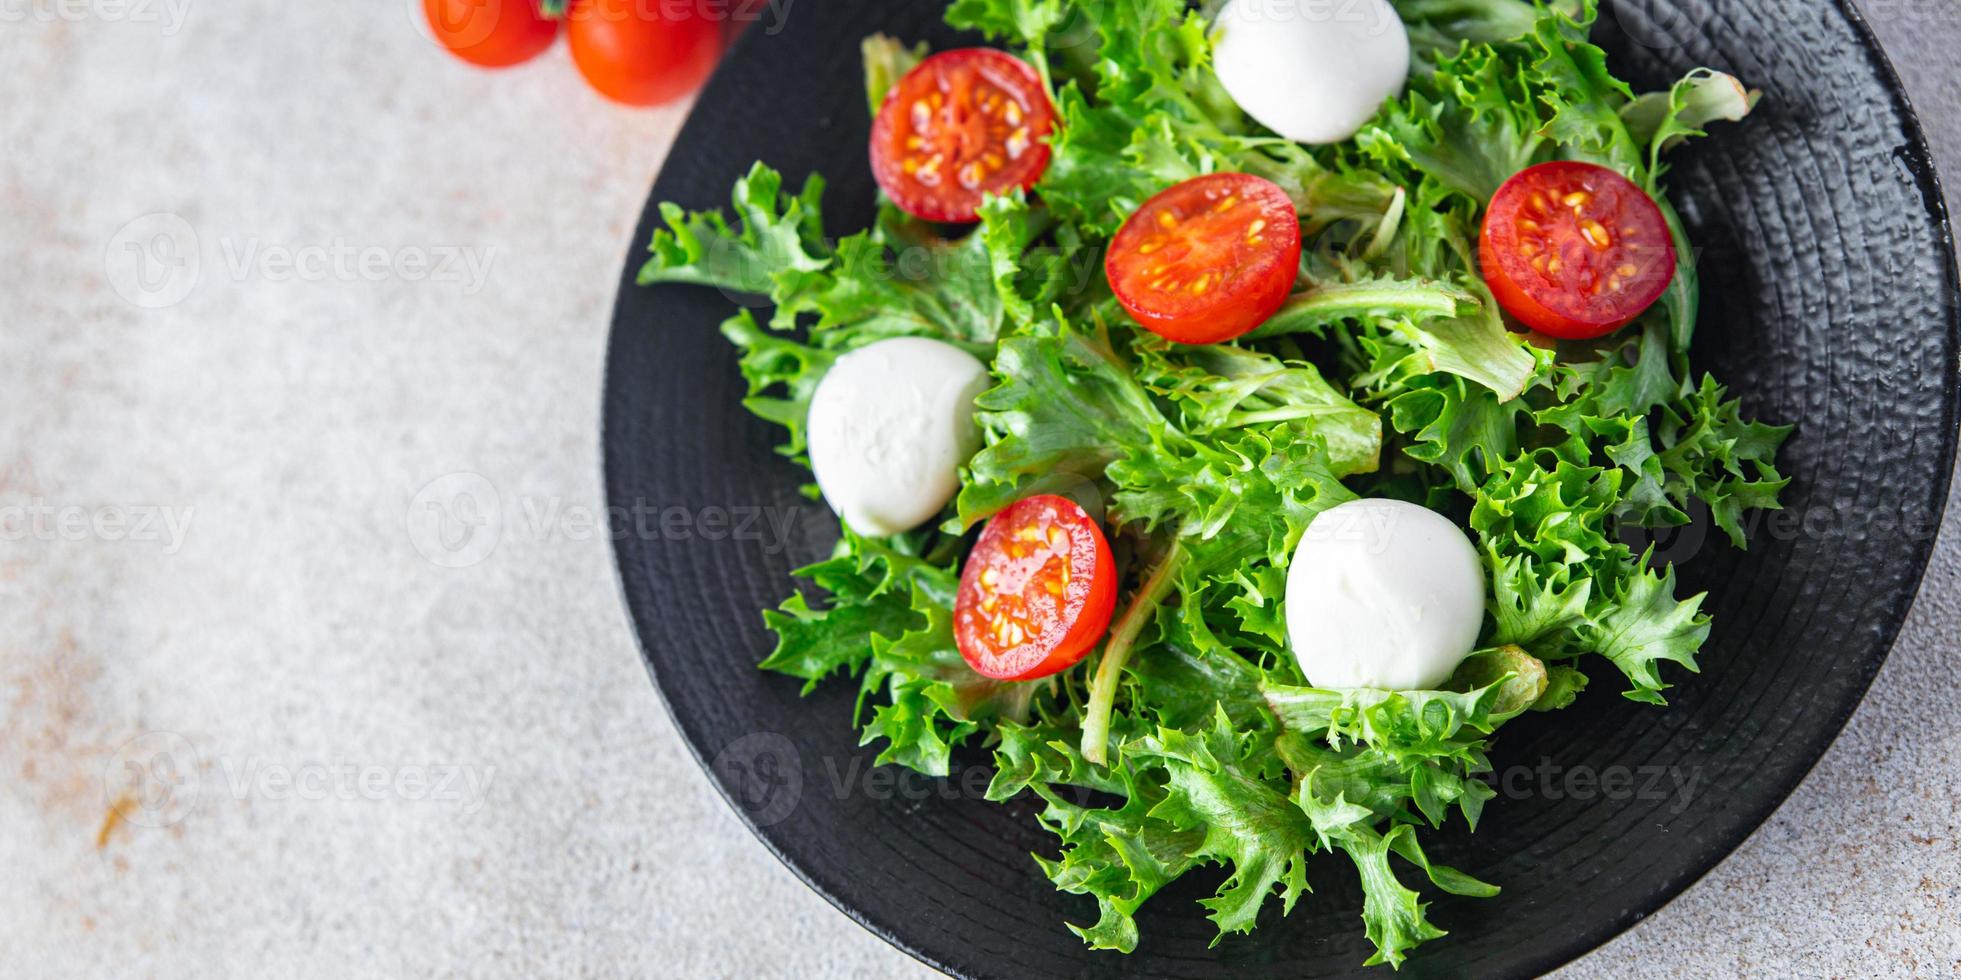 sallad mozzarella, tomat, sallad, ruccola hälsosam måltid vegansk eller vegetarisk mat foto